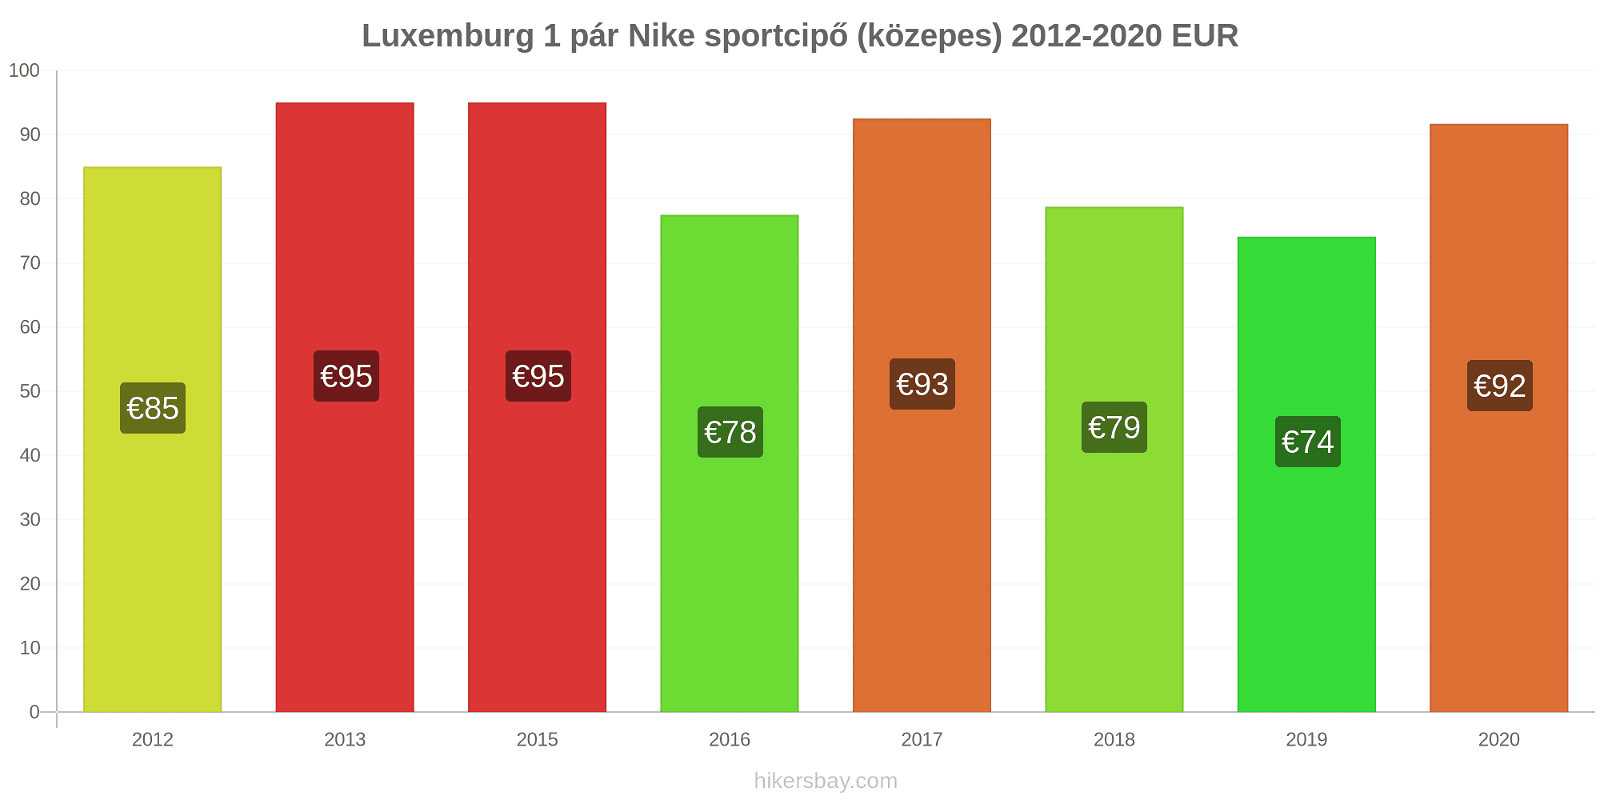 Luxemburg árváltozások 1 pár Nike sportcipő (közepes) hikersbay.com